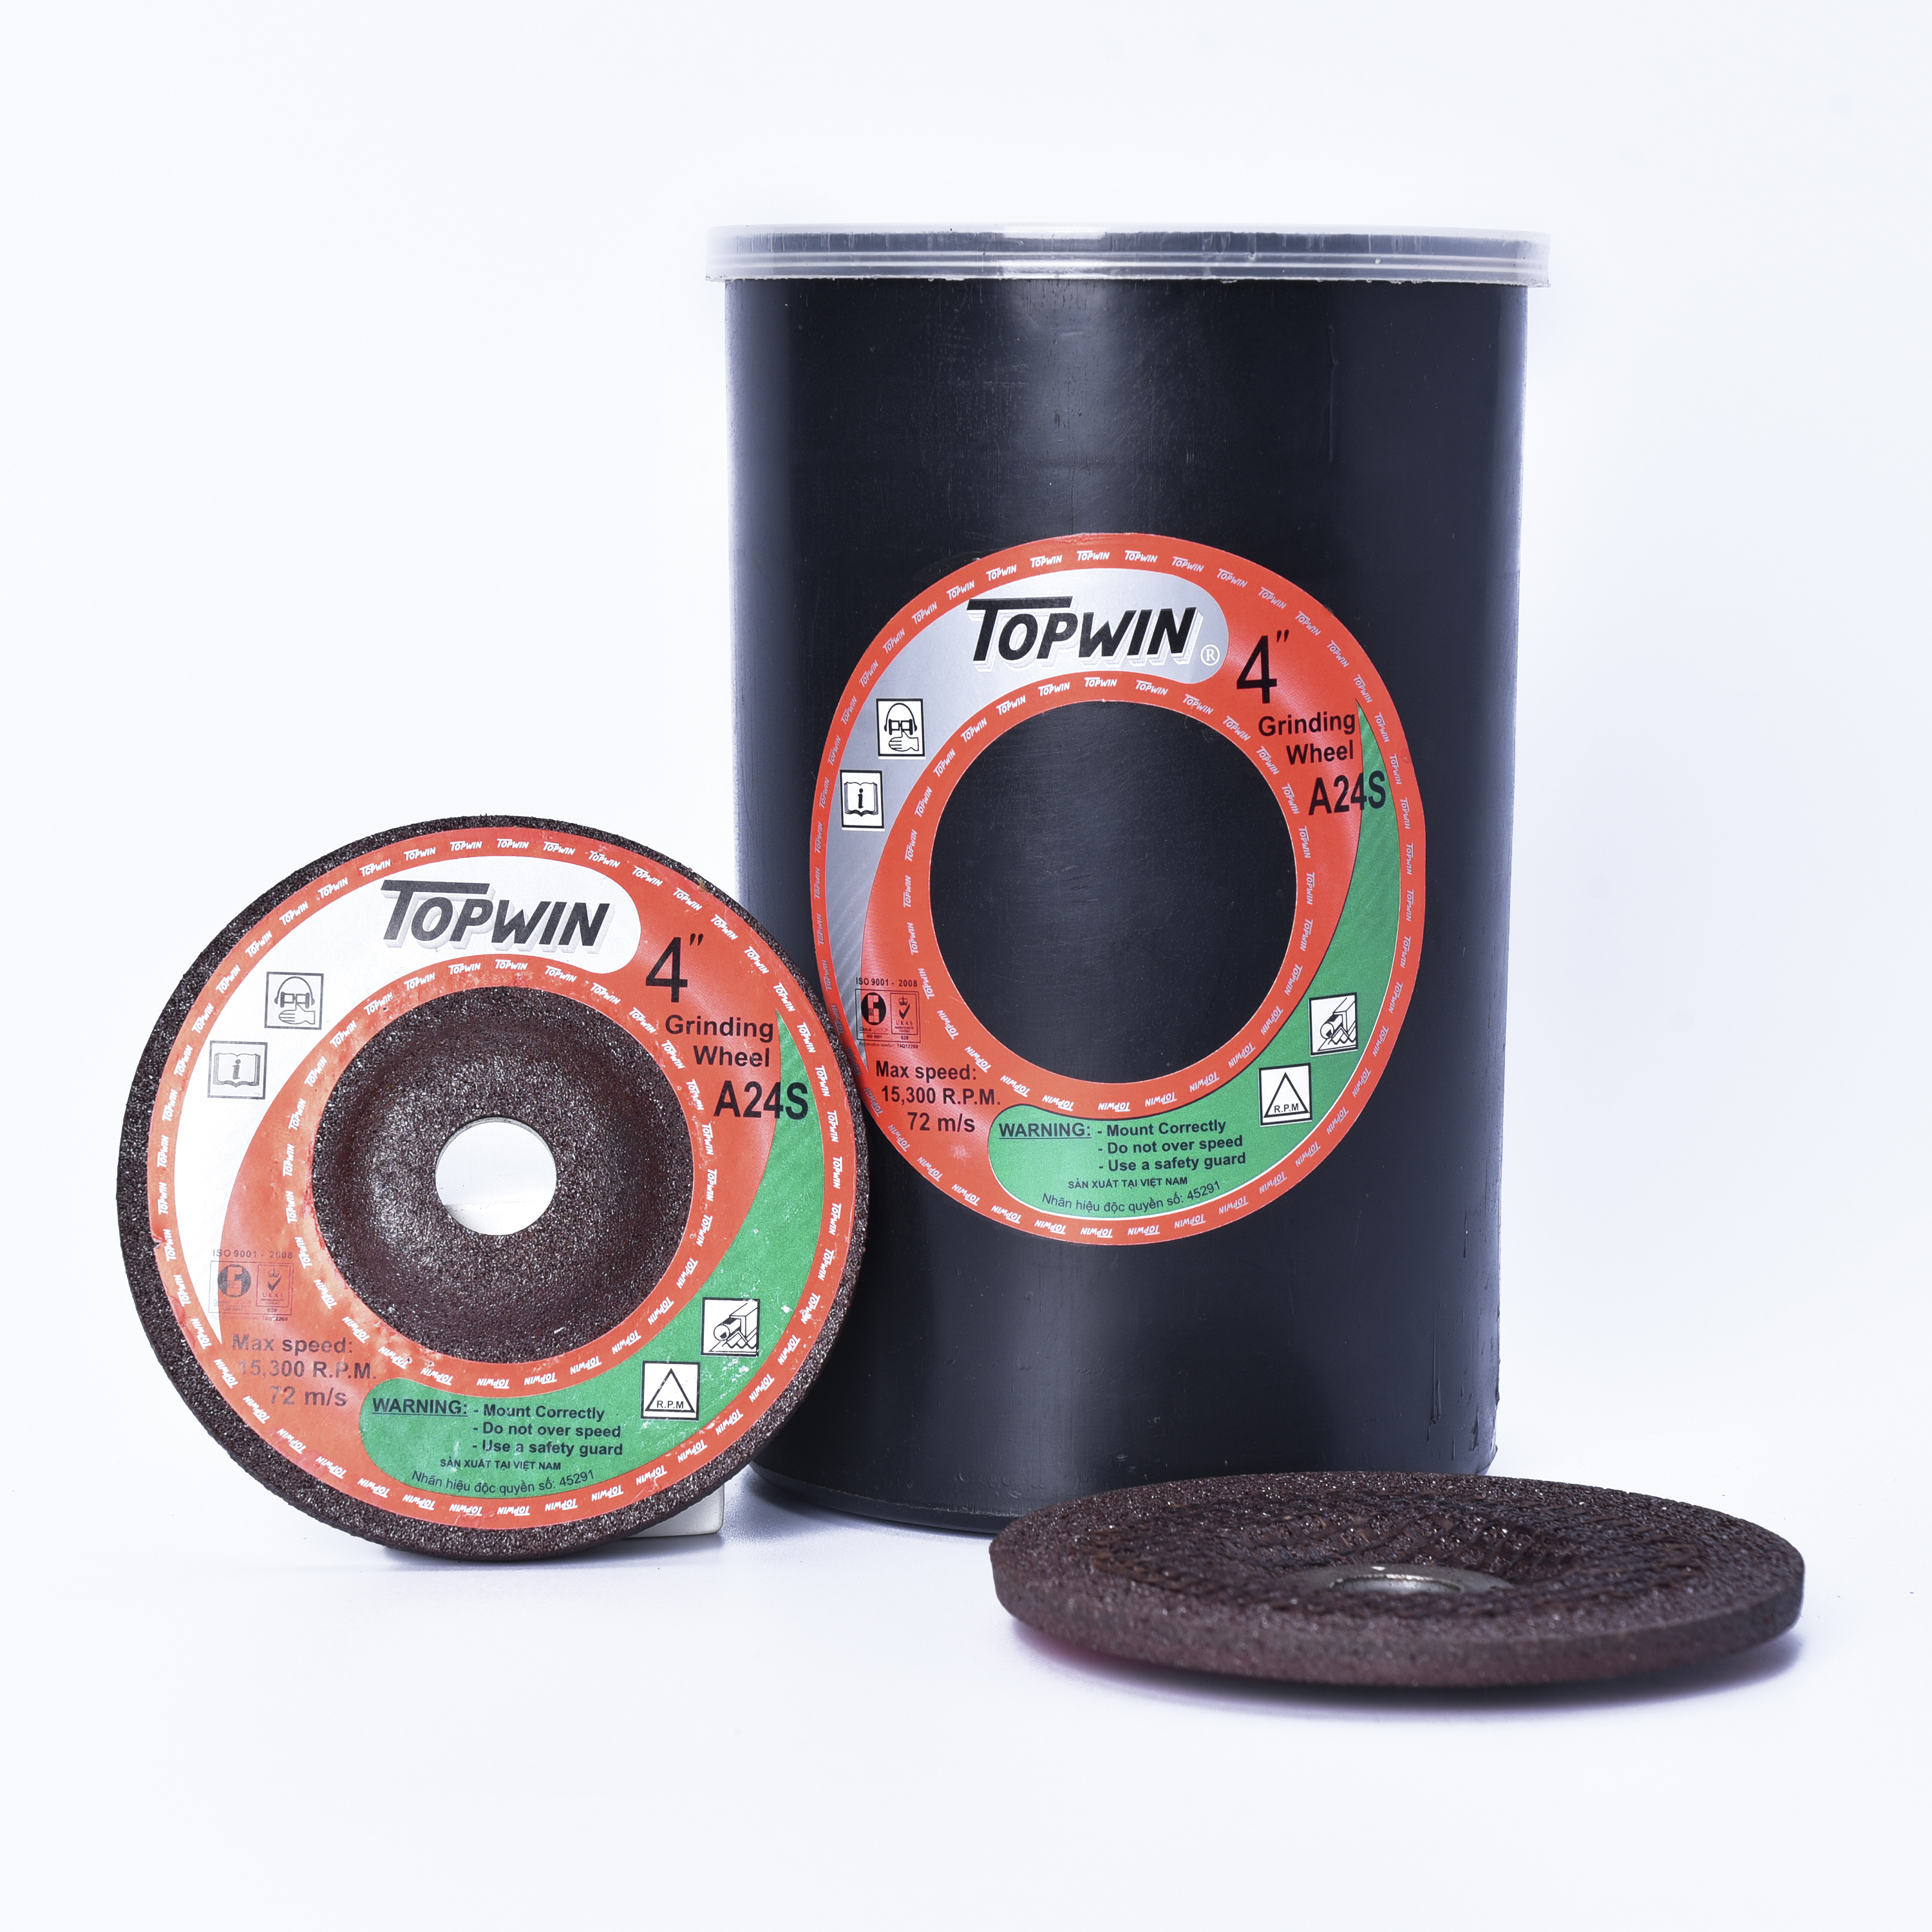 Đá Mài Topwin 100x3x16 mm Lưỡi Mài Chắc Chắn Chống Mài Mòn, Tuổi Thọ Cao Và Độ Chính Xác Hoàn Hảo | TOPWIN Official Store